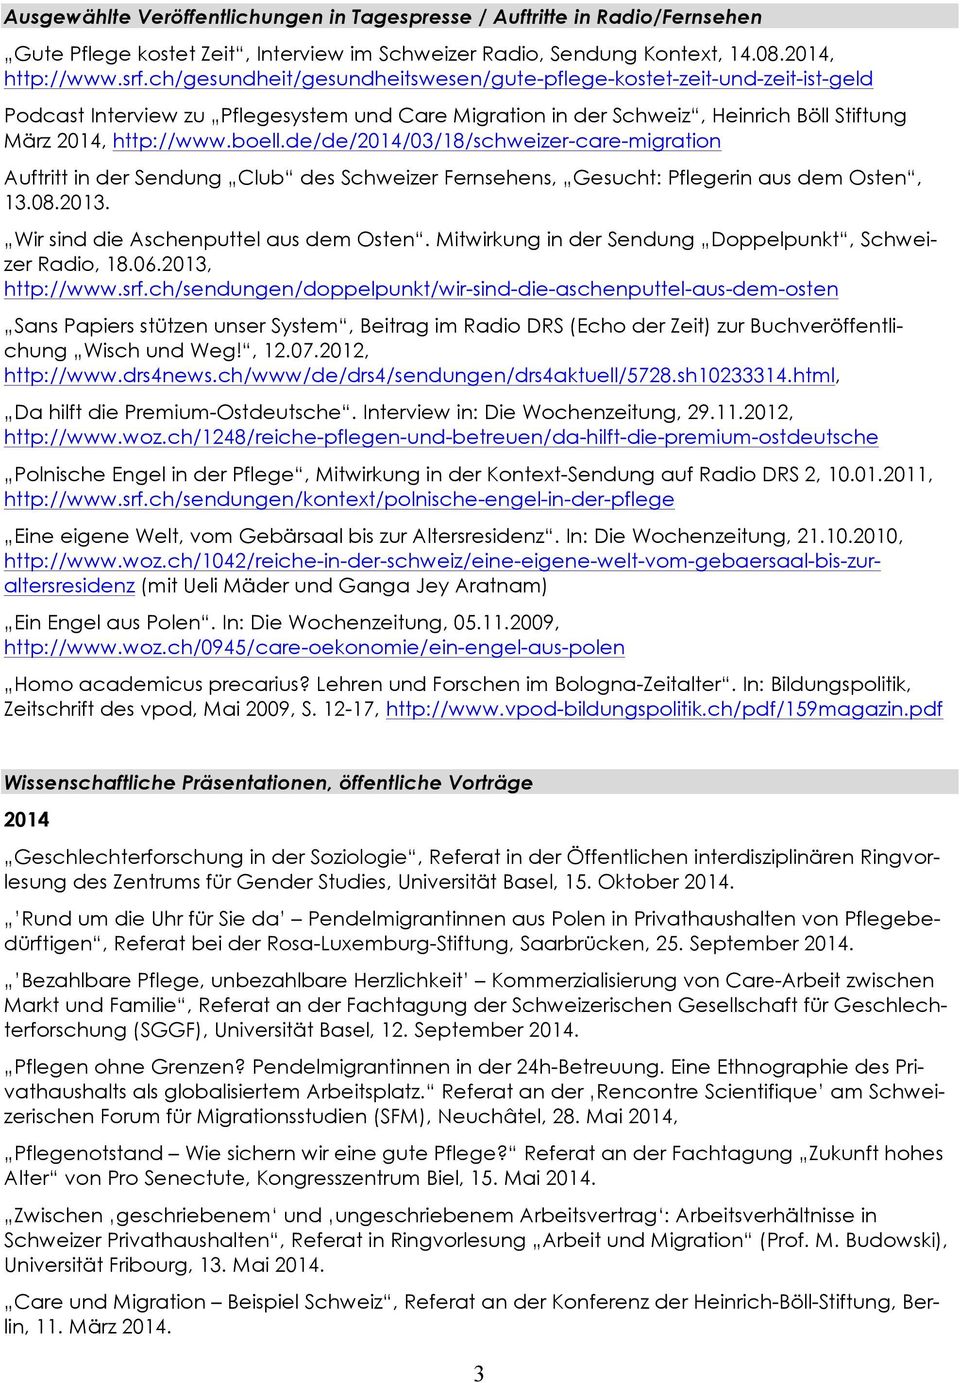 de/de/2014/03/18/schweizer-care-migration Auftritt in der Sendung Club des Schweizer Fernsehens, Gesucht: Pflegerin aus dem Osten, 13.08.2013. Wir sind die Aschenputtel aus dem Osten.